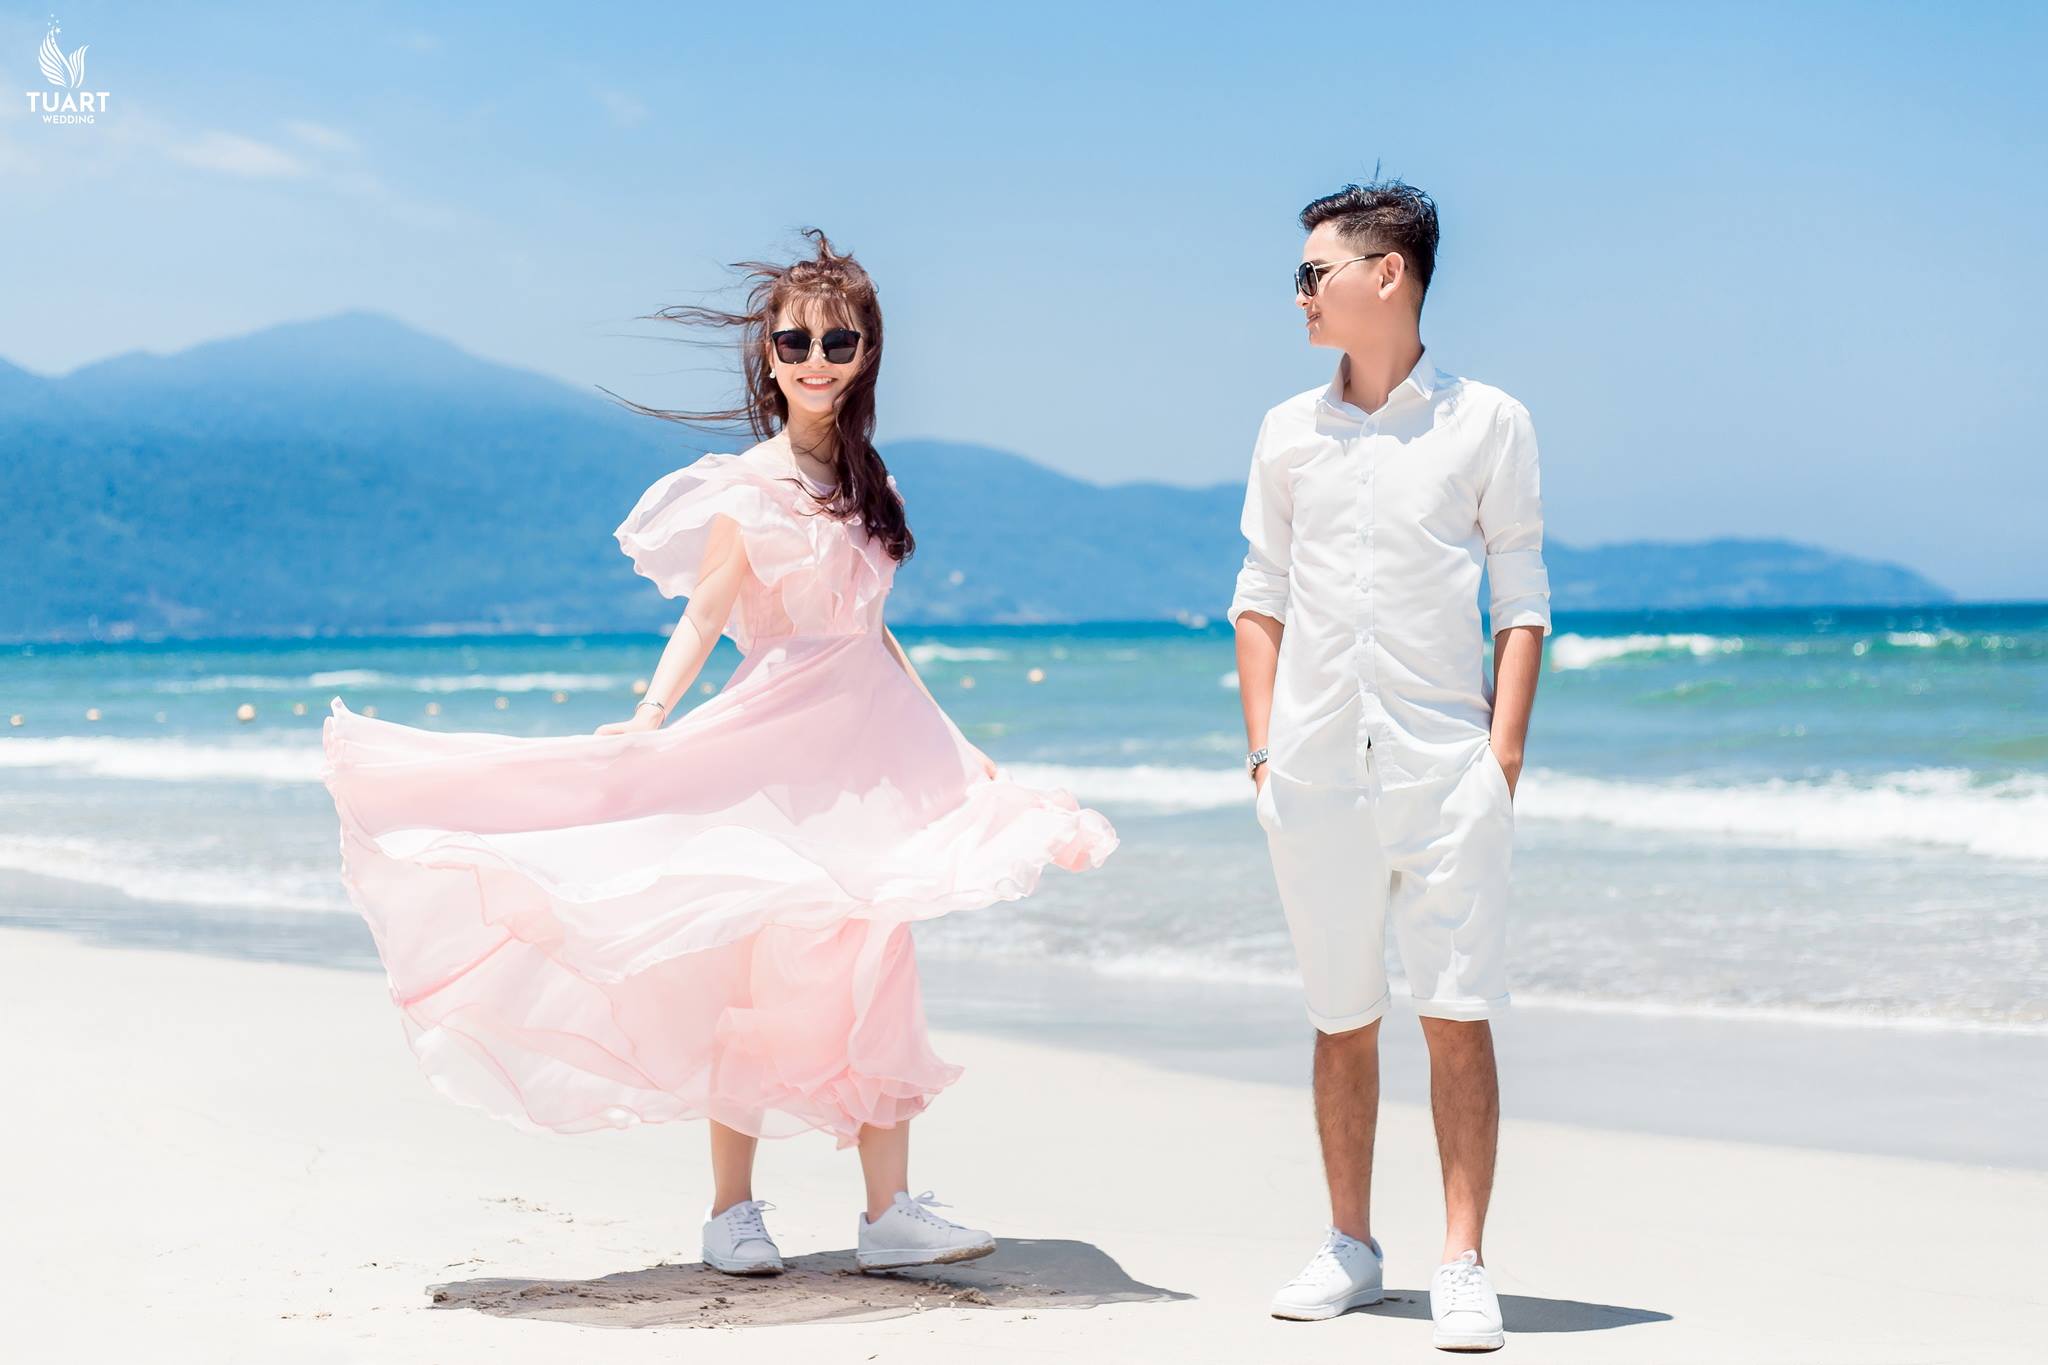 Album chụp hình cưới đẹp Đà Nẵng : Tuấn-Loan 11